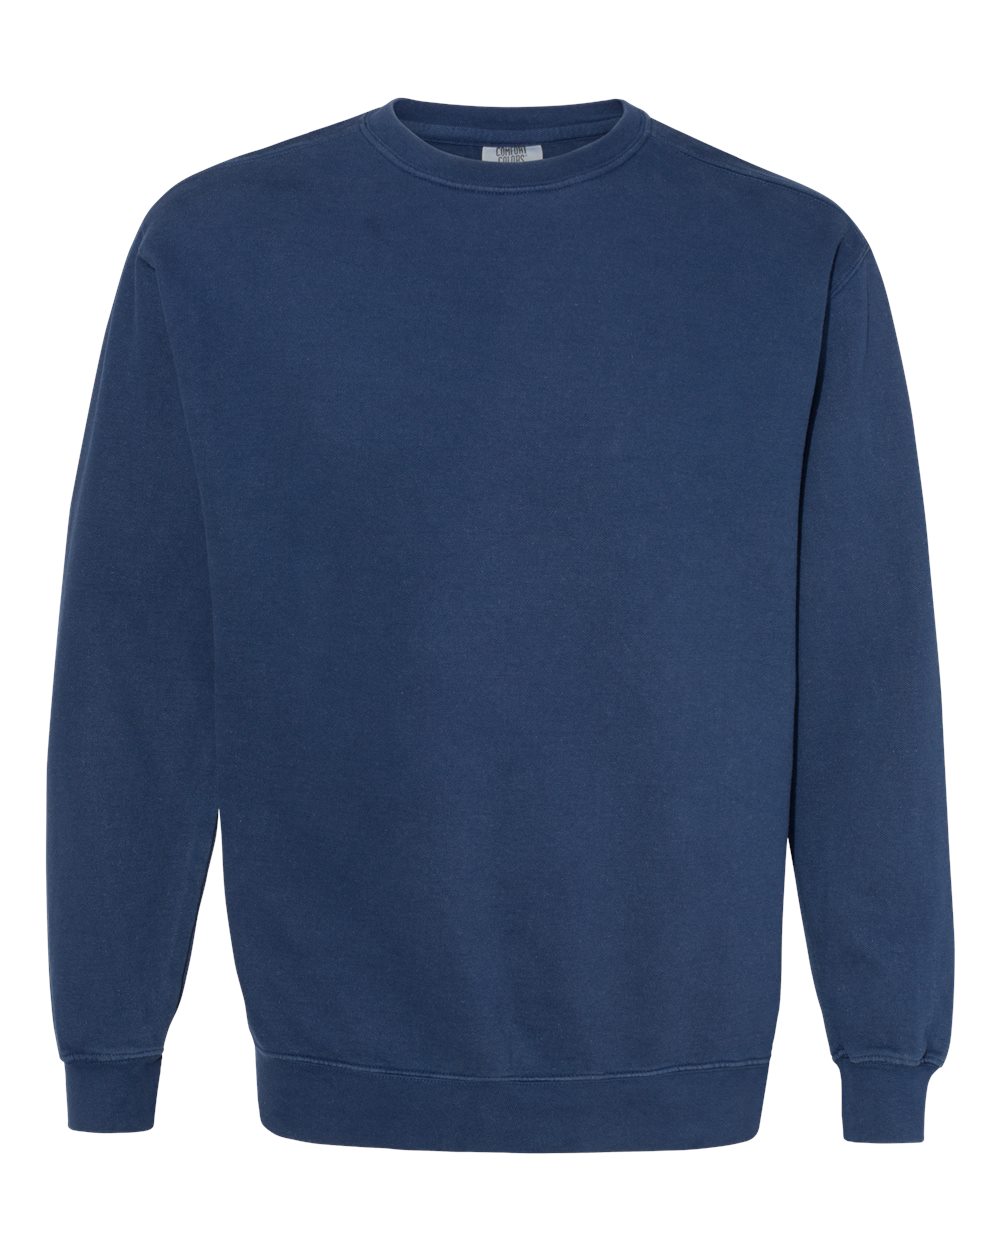 Comfort Colors Garment-Dyed Crewneck Sweatshirt (1566) in True Navy